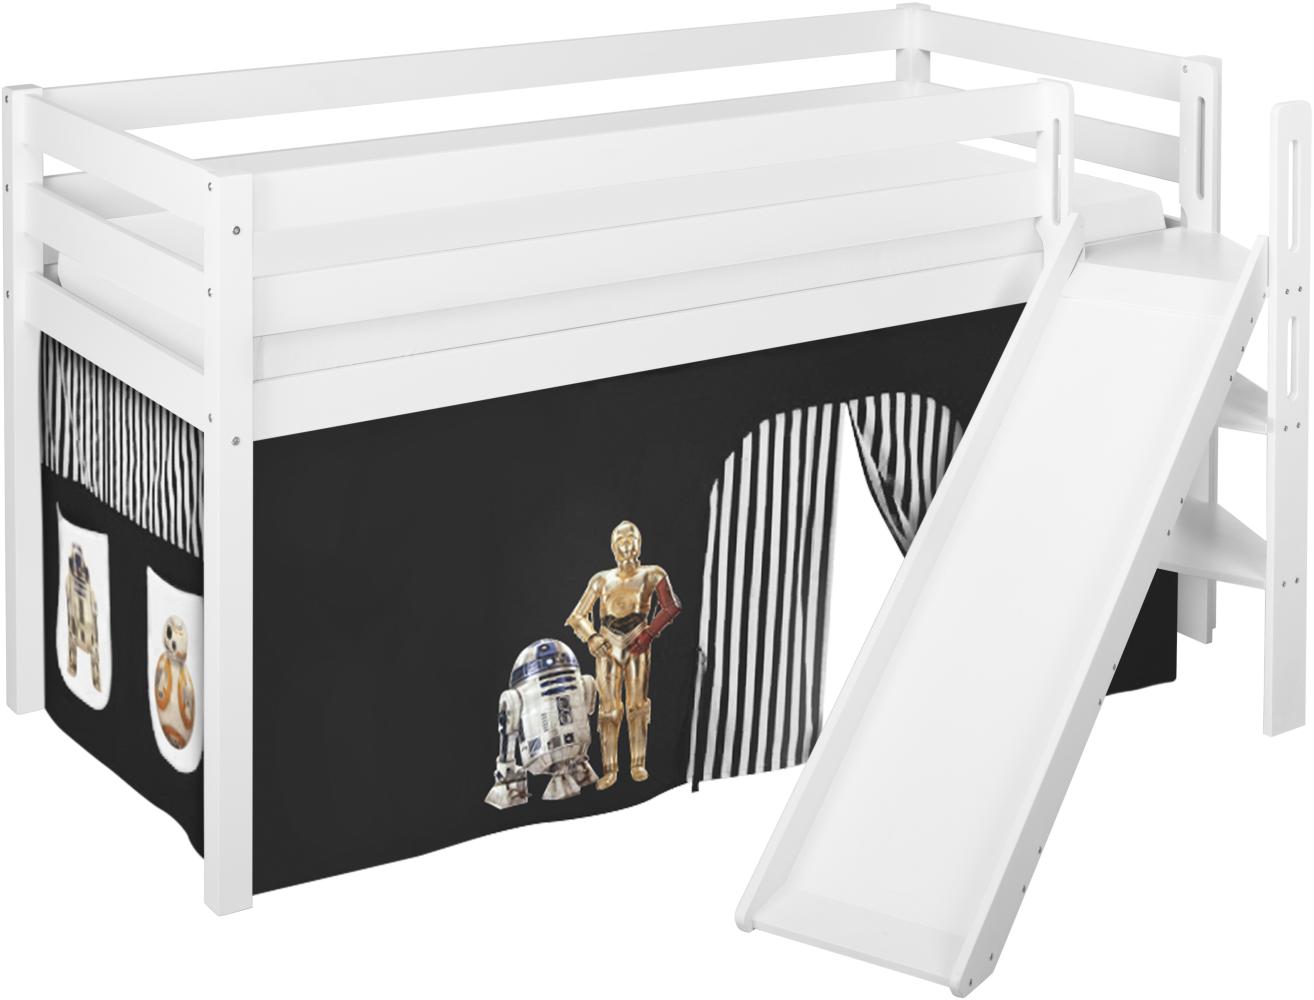 Lilokids 'Jelle' Spielbett 90 x 200 cm, Star Wars Schwarz, Kiefer massiv, mit schräger Rutsche und Vorhang Bild 1